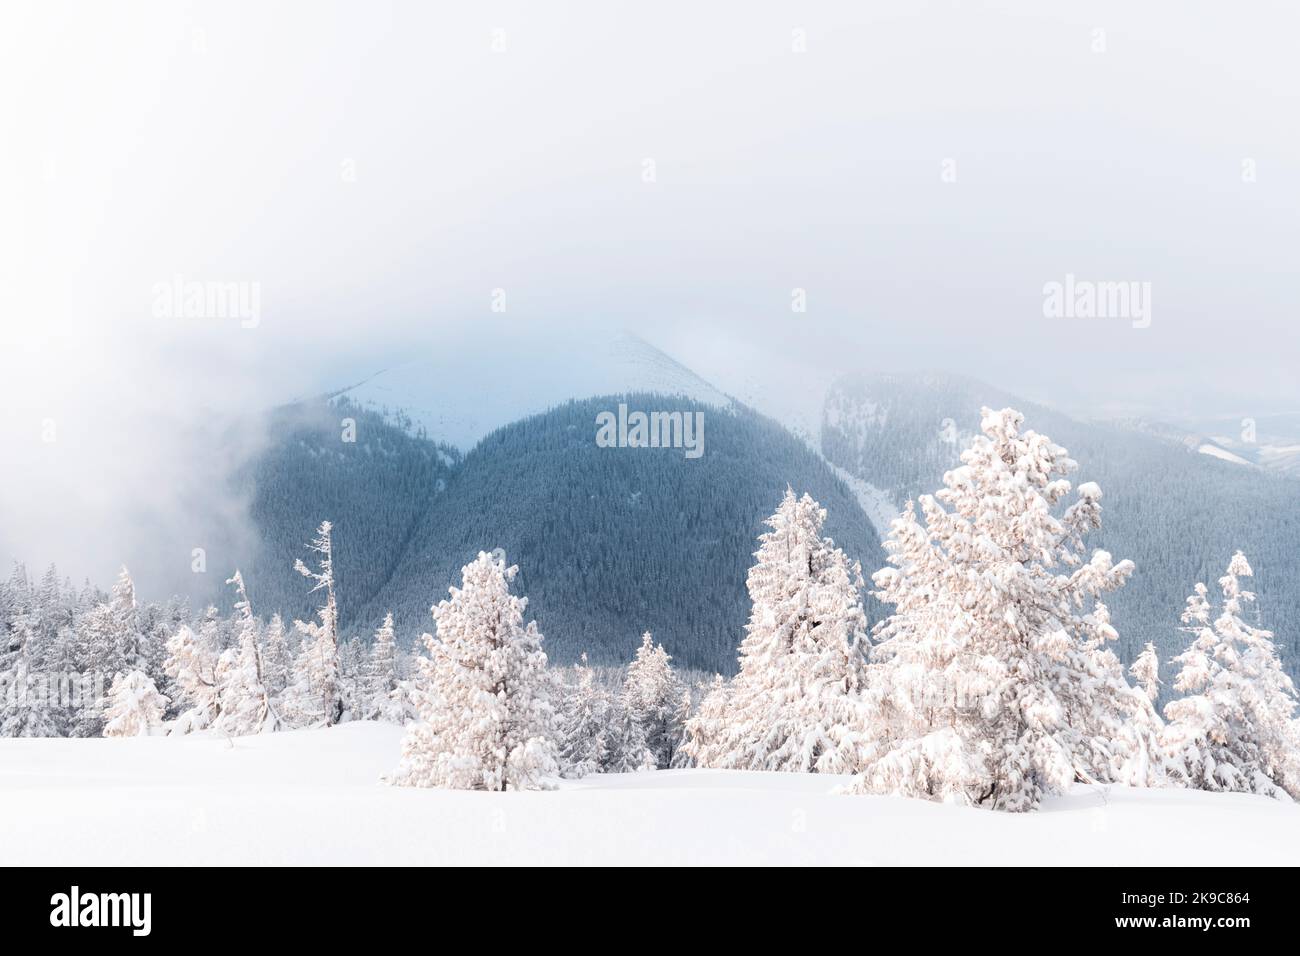 Fantastische Winterlandschaft mit verschneiten Bäumen und schneebedeckten Gipfeln. Karpaten, Ukraine. Weihnachten Urlaub Hintergrund. Landschaftsfotografie Stockfoto